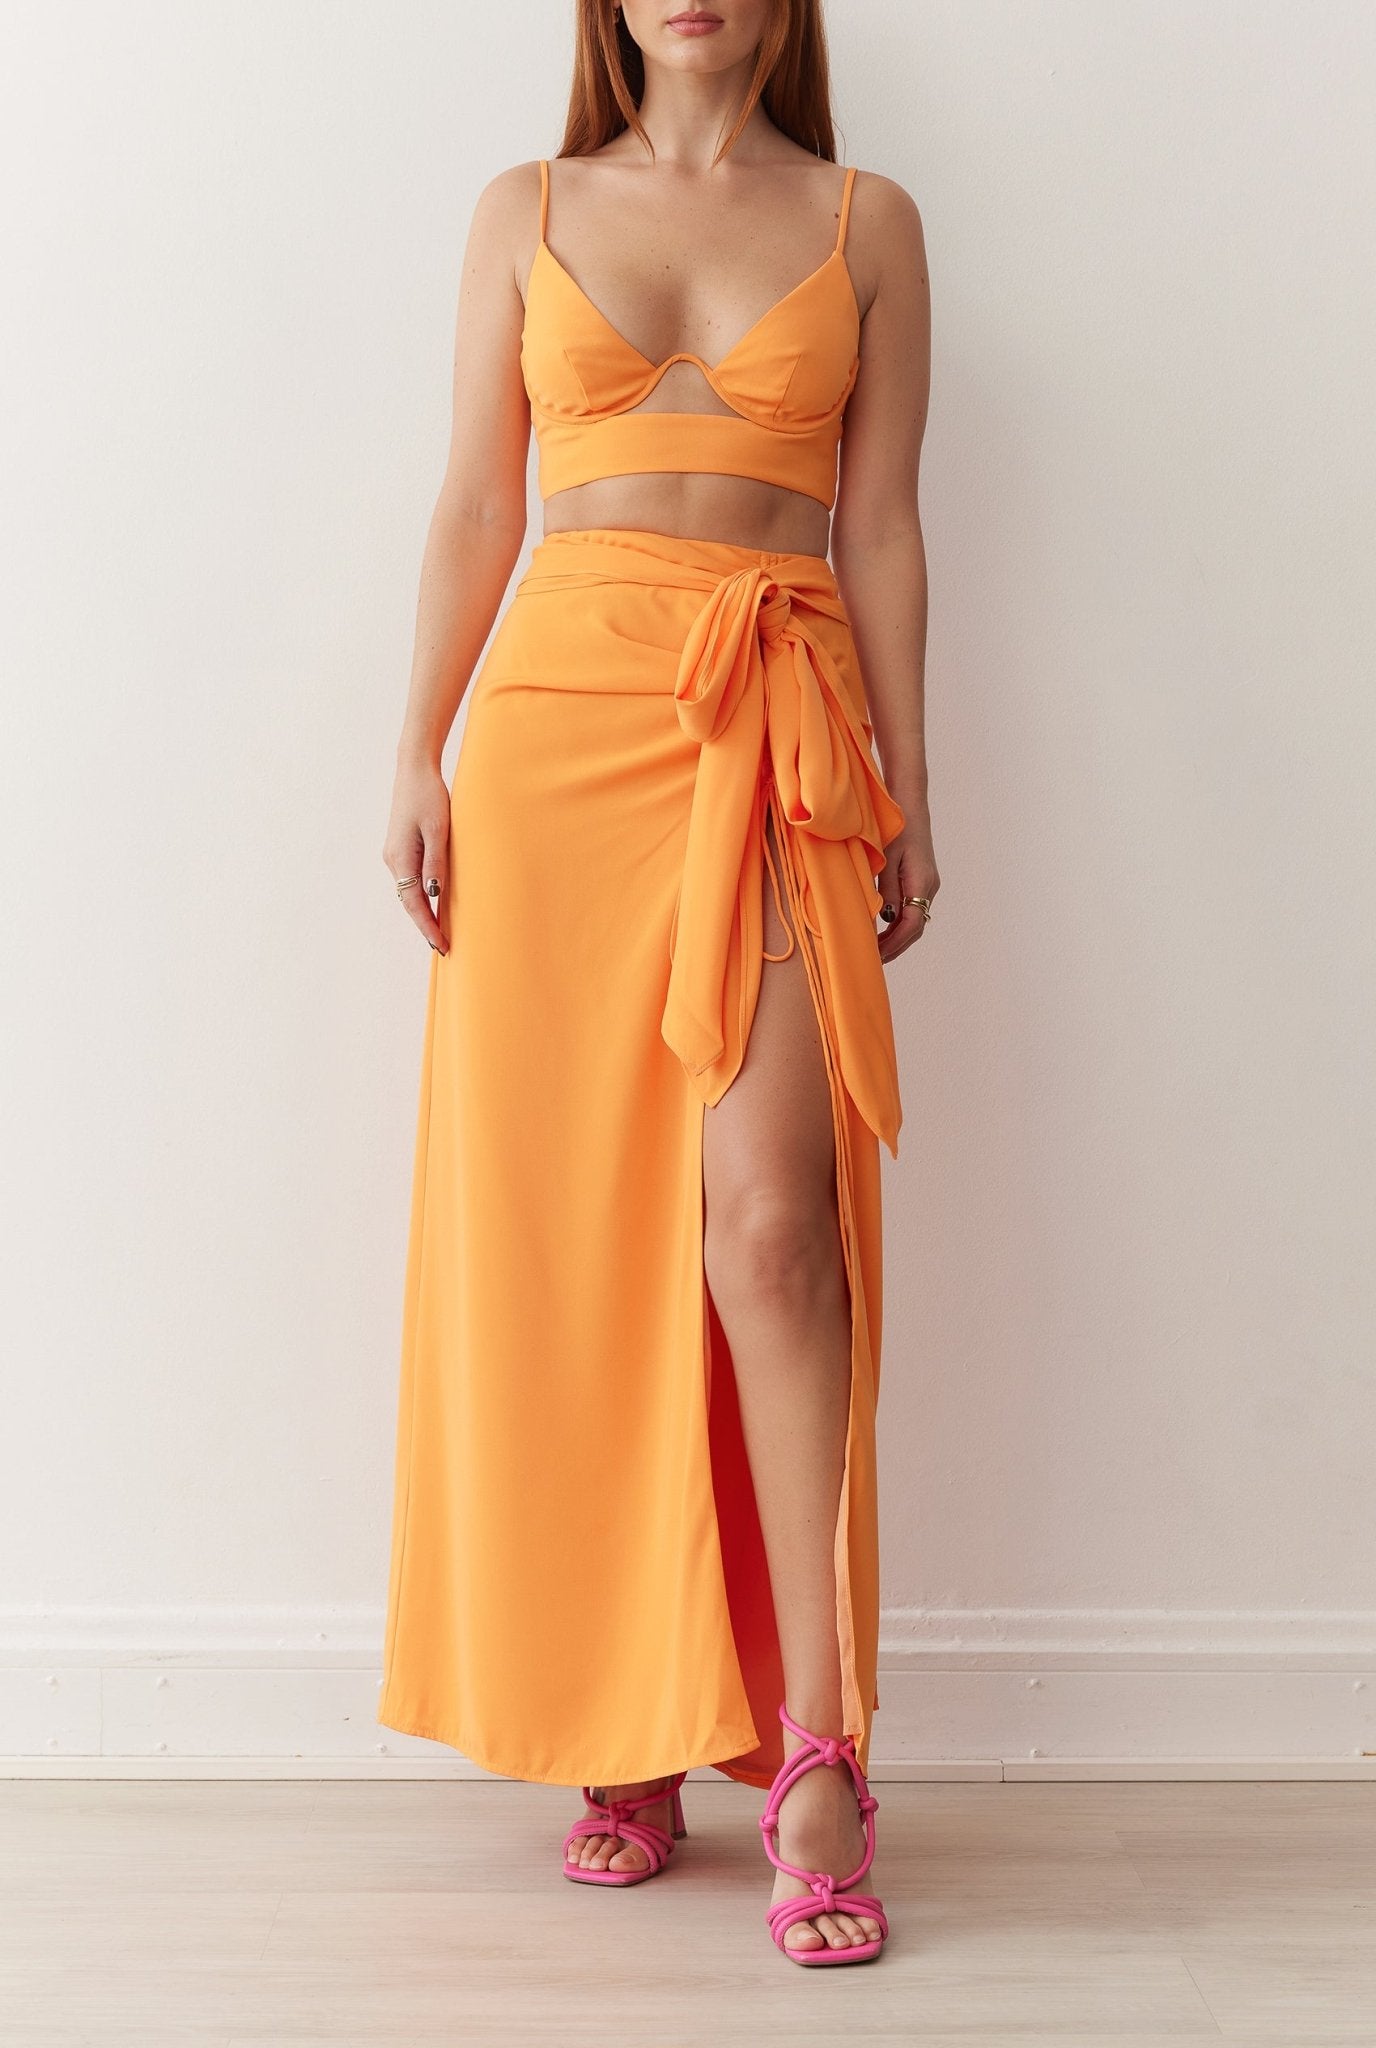 South Skirt in Tangerine - BOSKEMPER